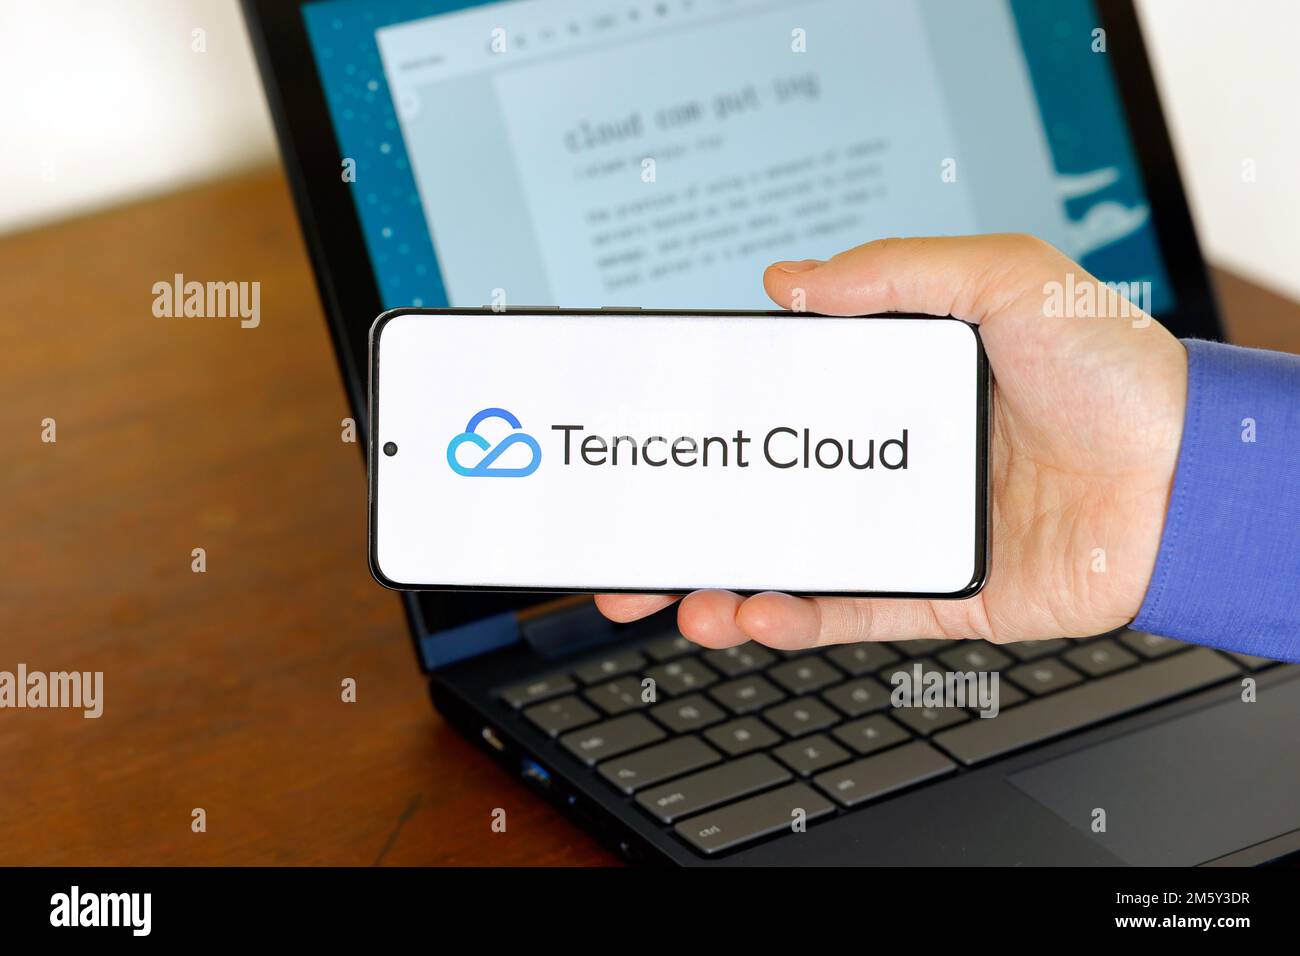 Logo de Tencent Cloud sur un smartphone devant un ordinateur. Tencent Cloud est une société de technologie de cloud computing, filiale de Tencent Holdings. Banque D'Images